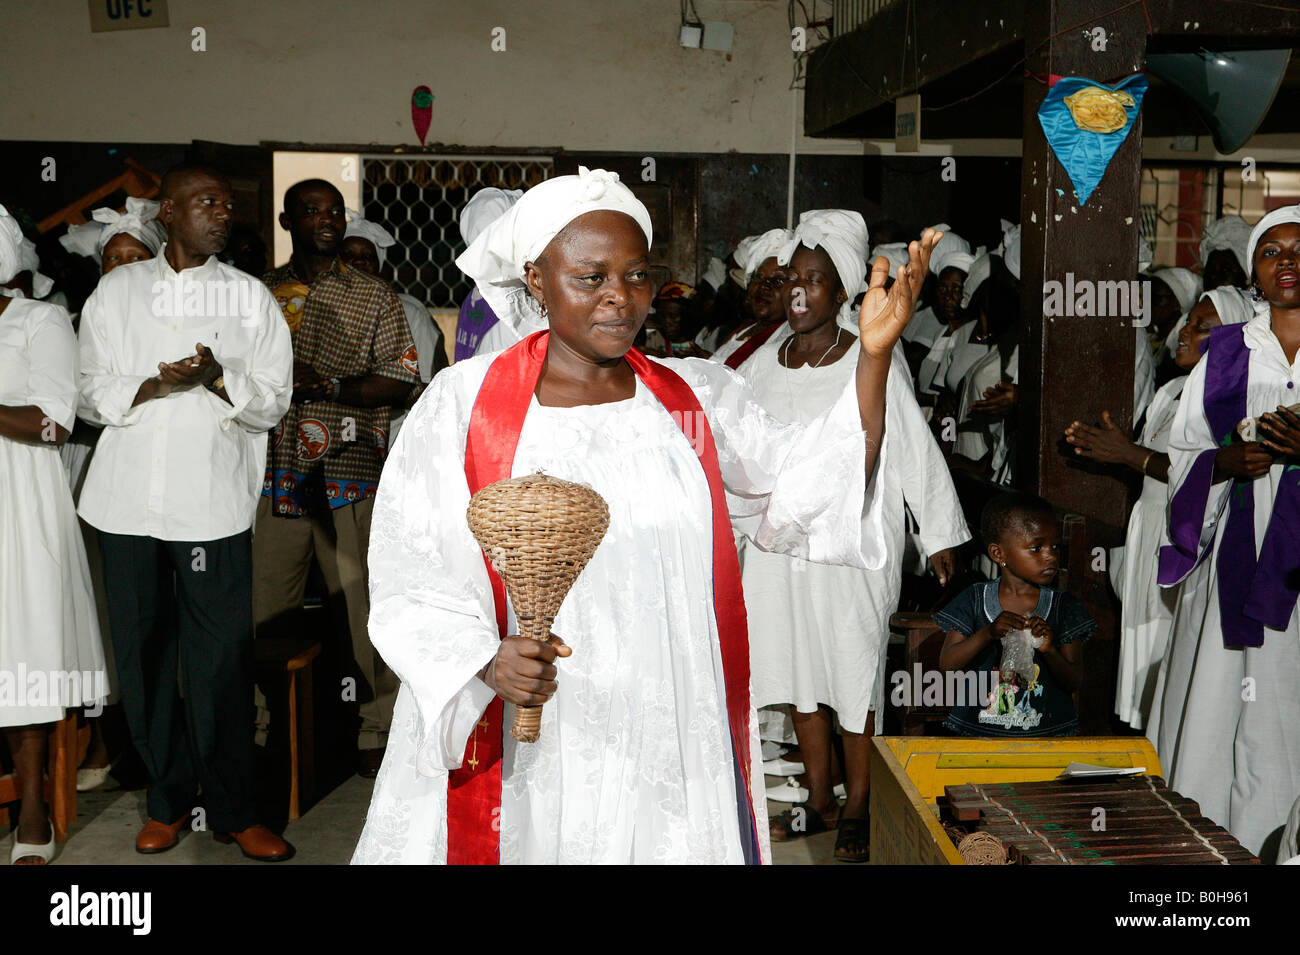 Donna vestito di vesti bianche e rosso anta a fare musica con un battito di vimini durante il servizio di una chiesa a Douala Camerun, Africa Foto Stock